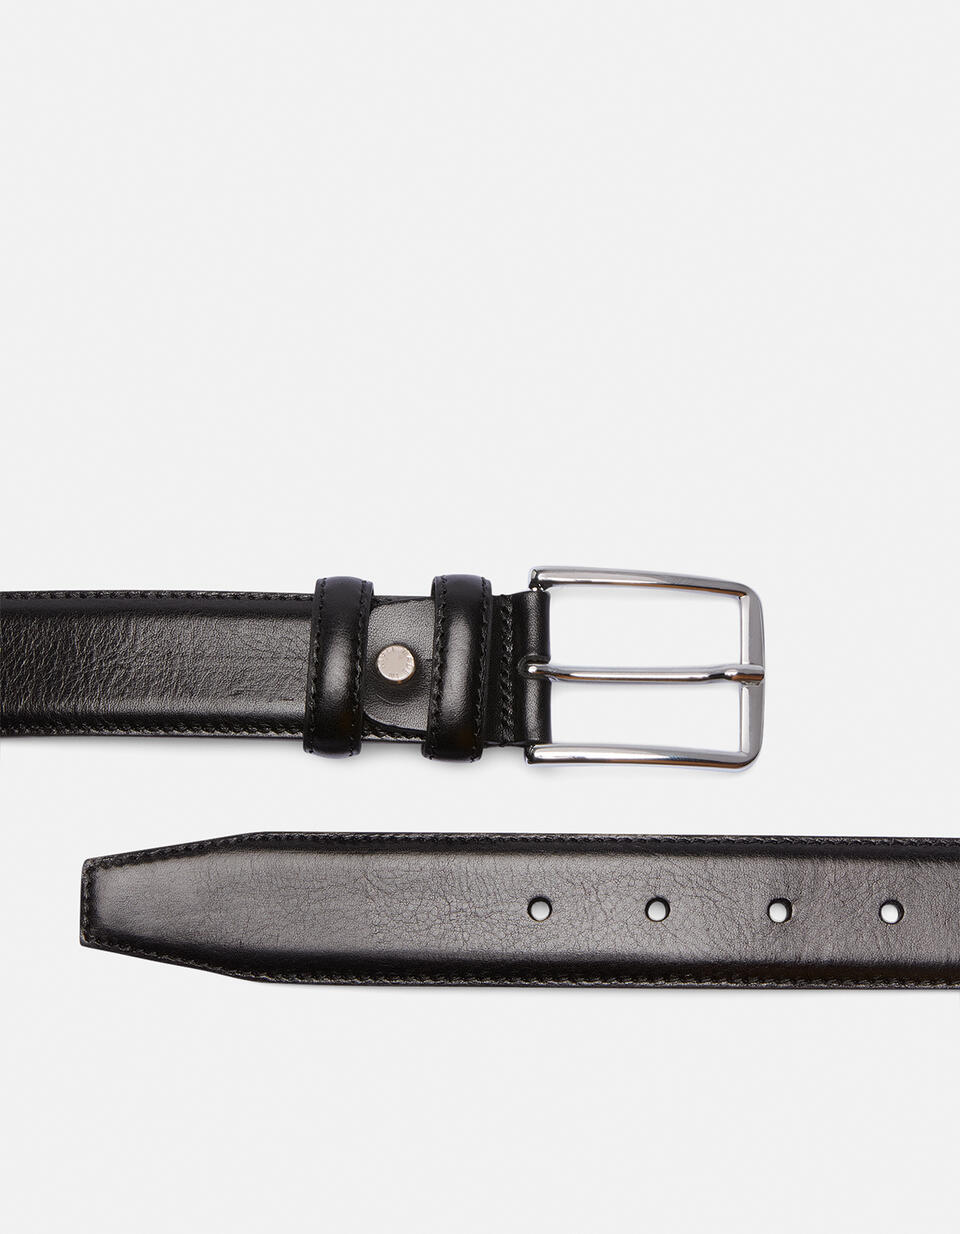 Cintura Elegante in Pelle con Punta quadra alta 3,5 cm NERO  - Cinture Uomo - Cinture - Cuoieria Fiorentina